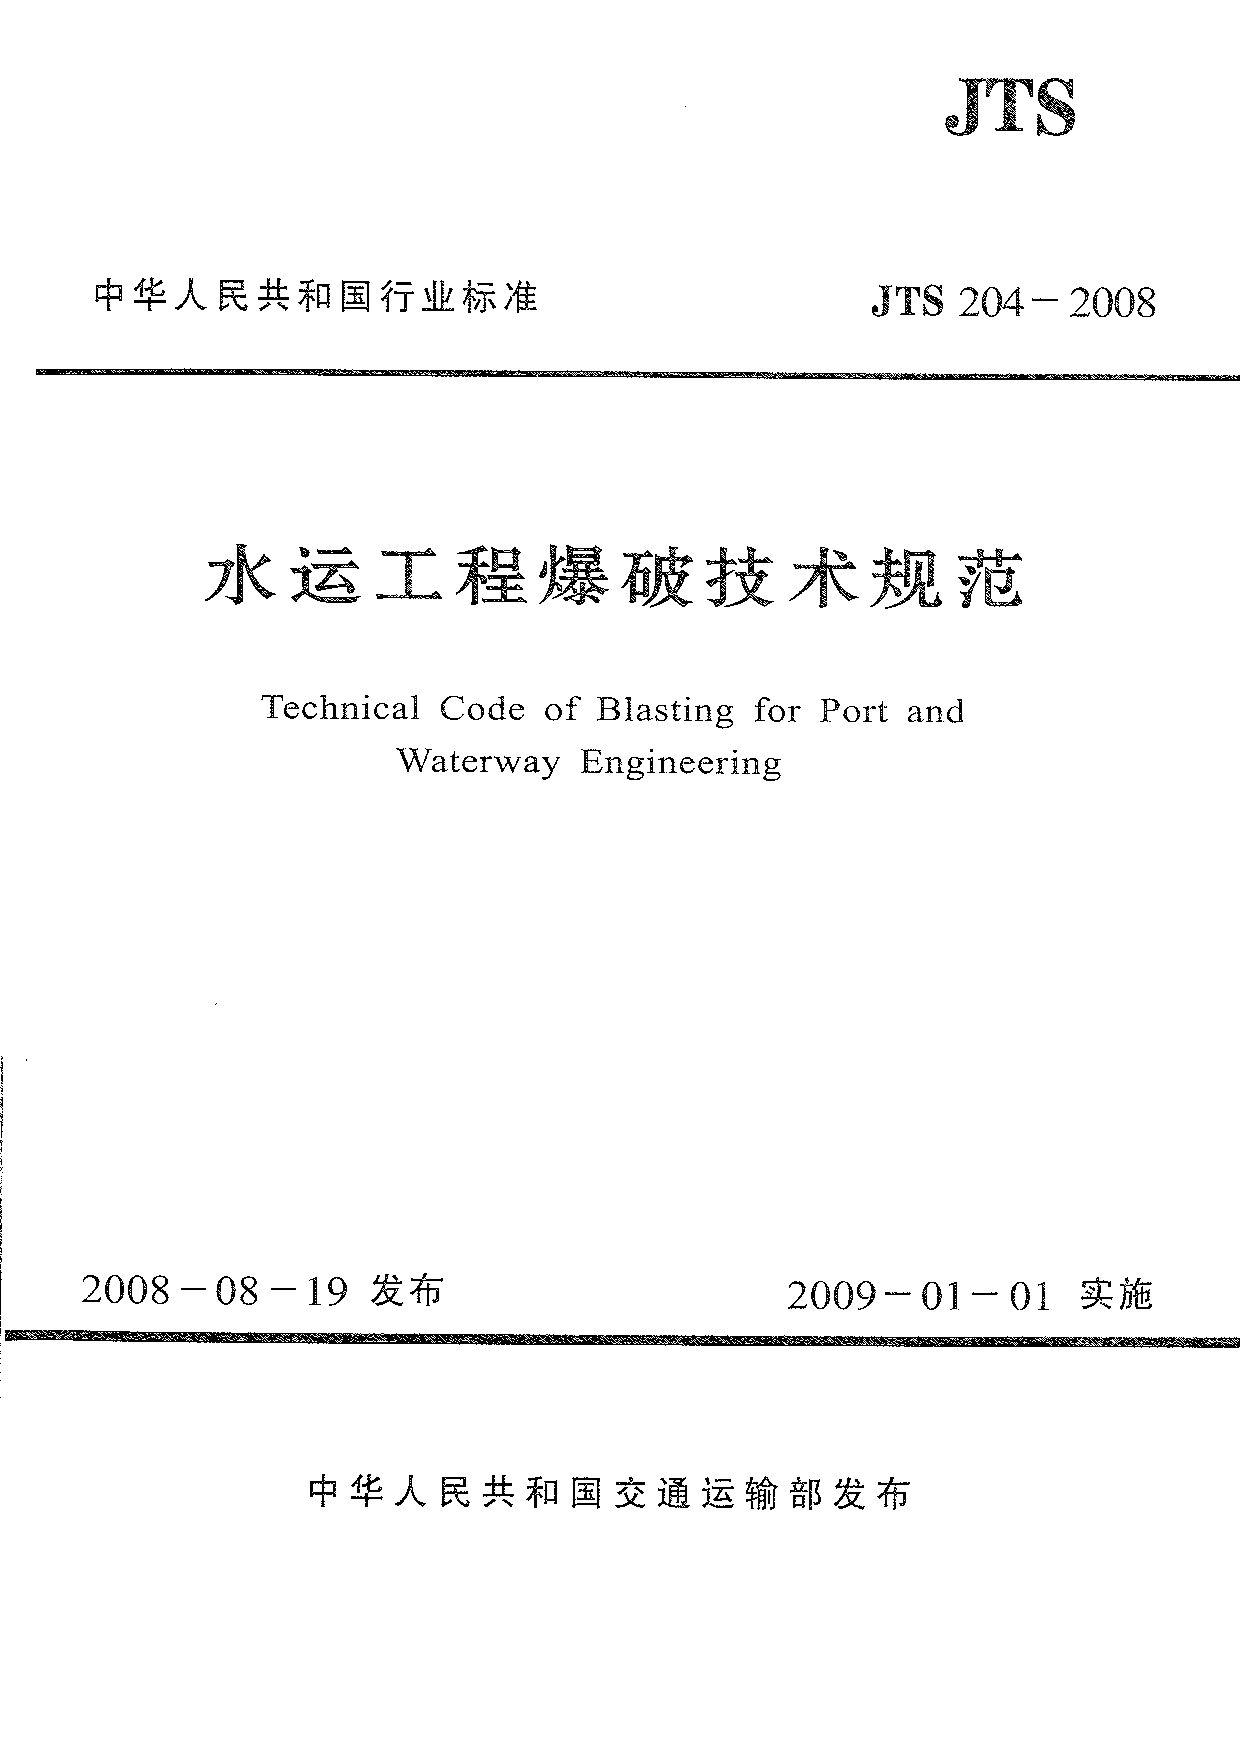 JTS 204-2008封面图